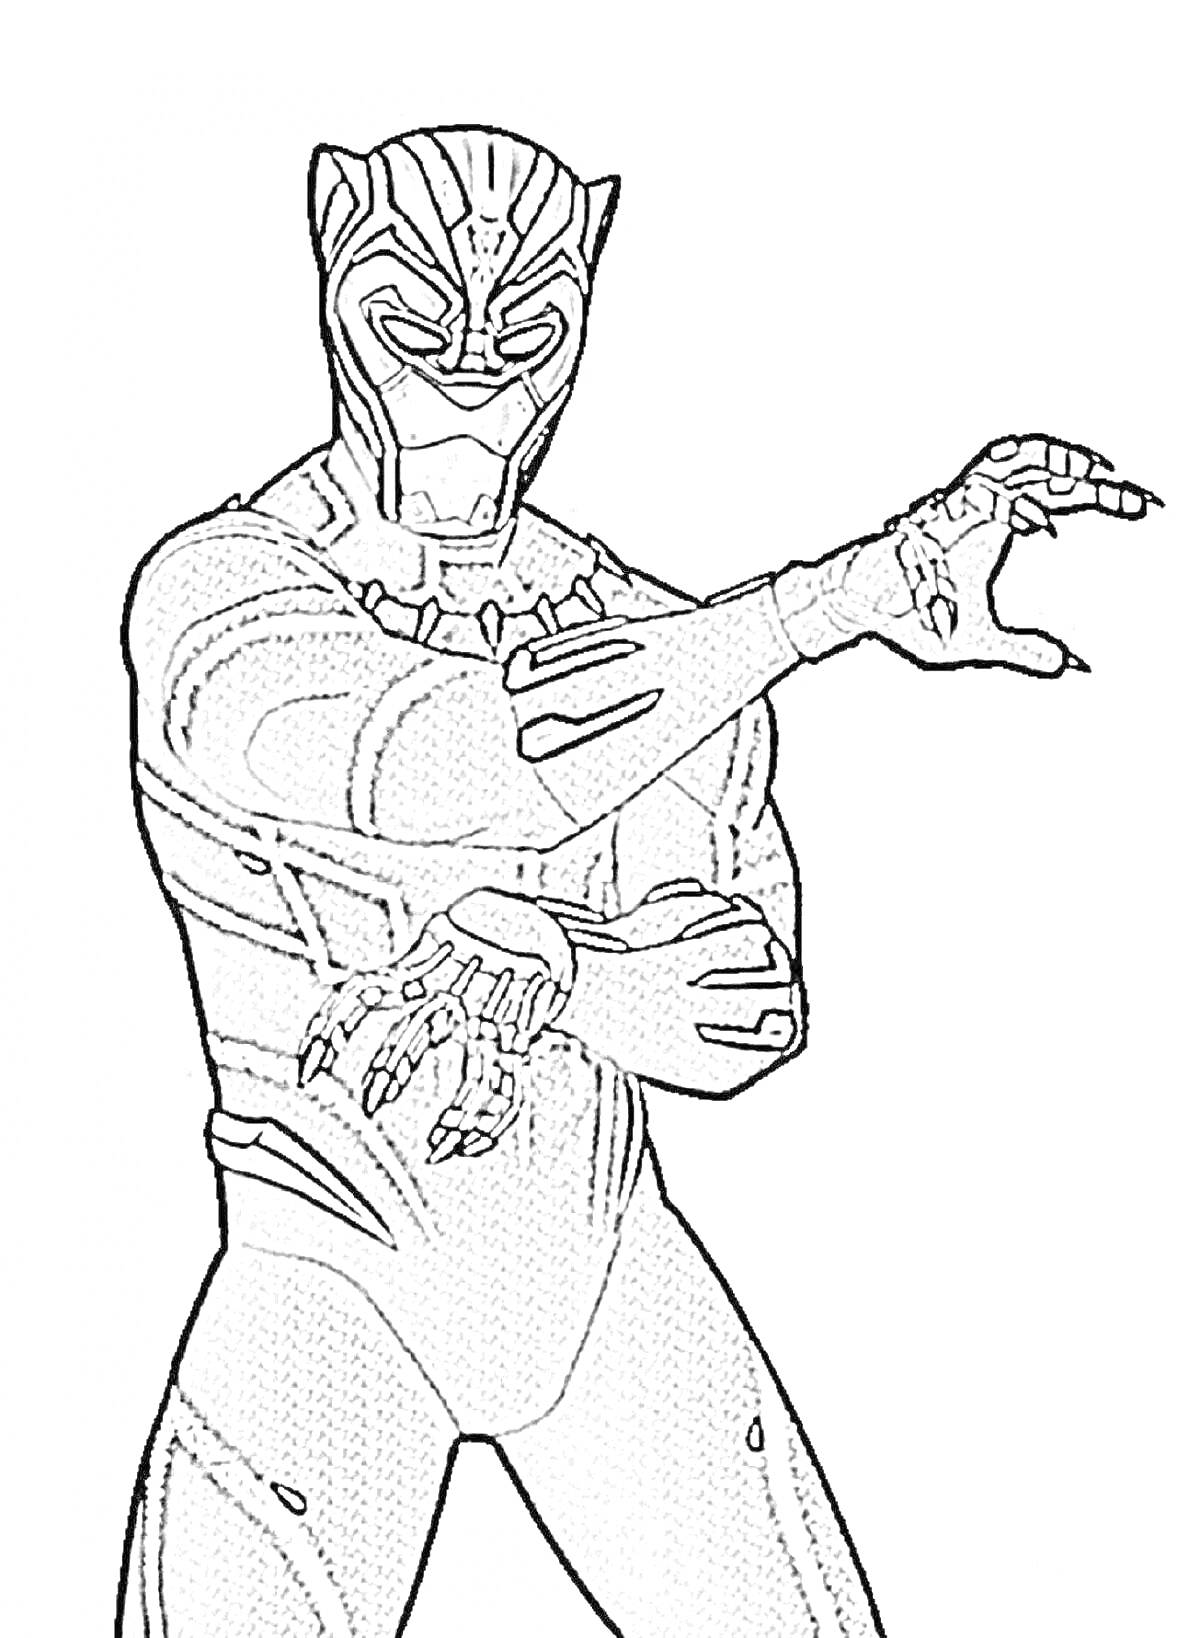 Раскраска Человек в костюме Черной Пантеры, стоящий в боевой стойке с поднятыми руками